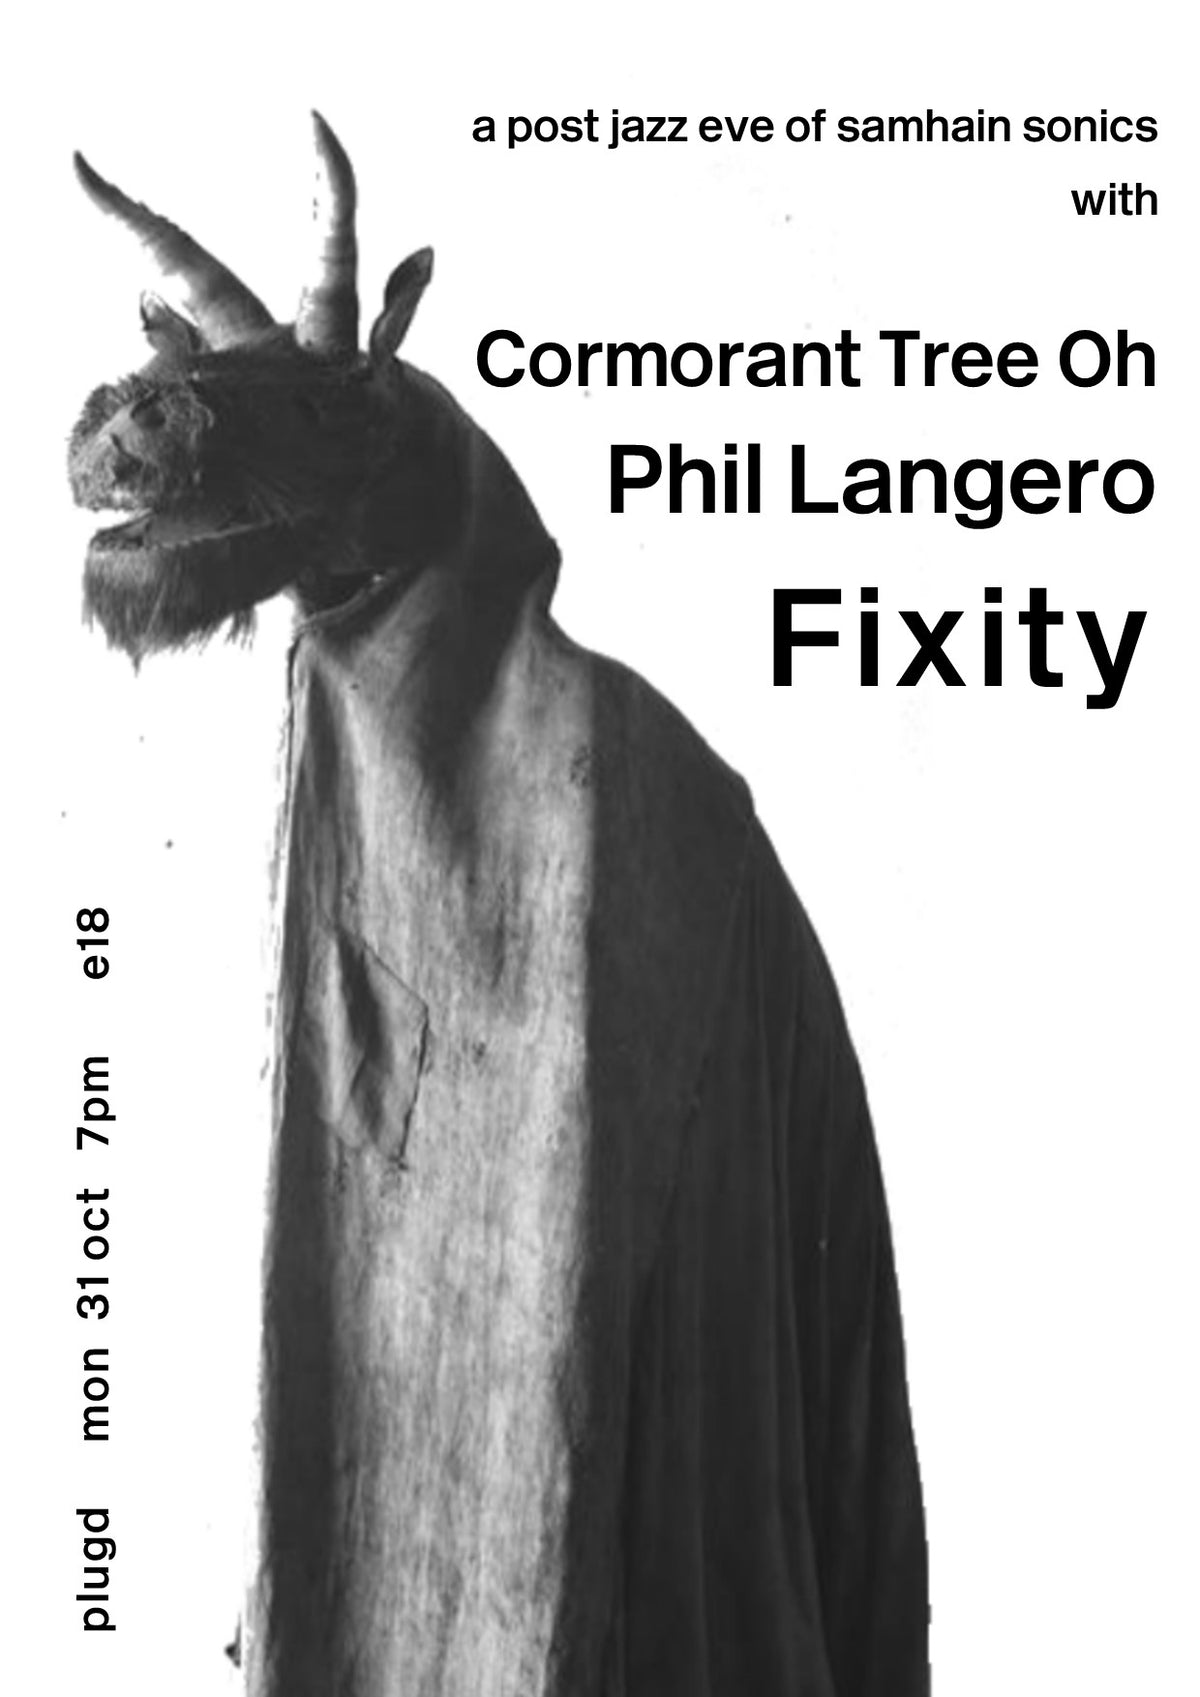 Fixity / Cormorant Tree Oh / Phil Langero